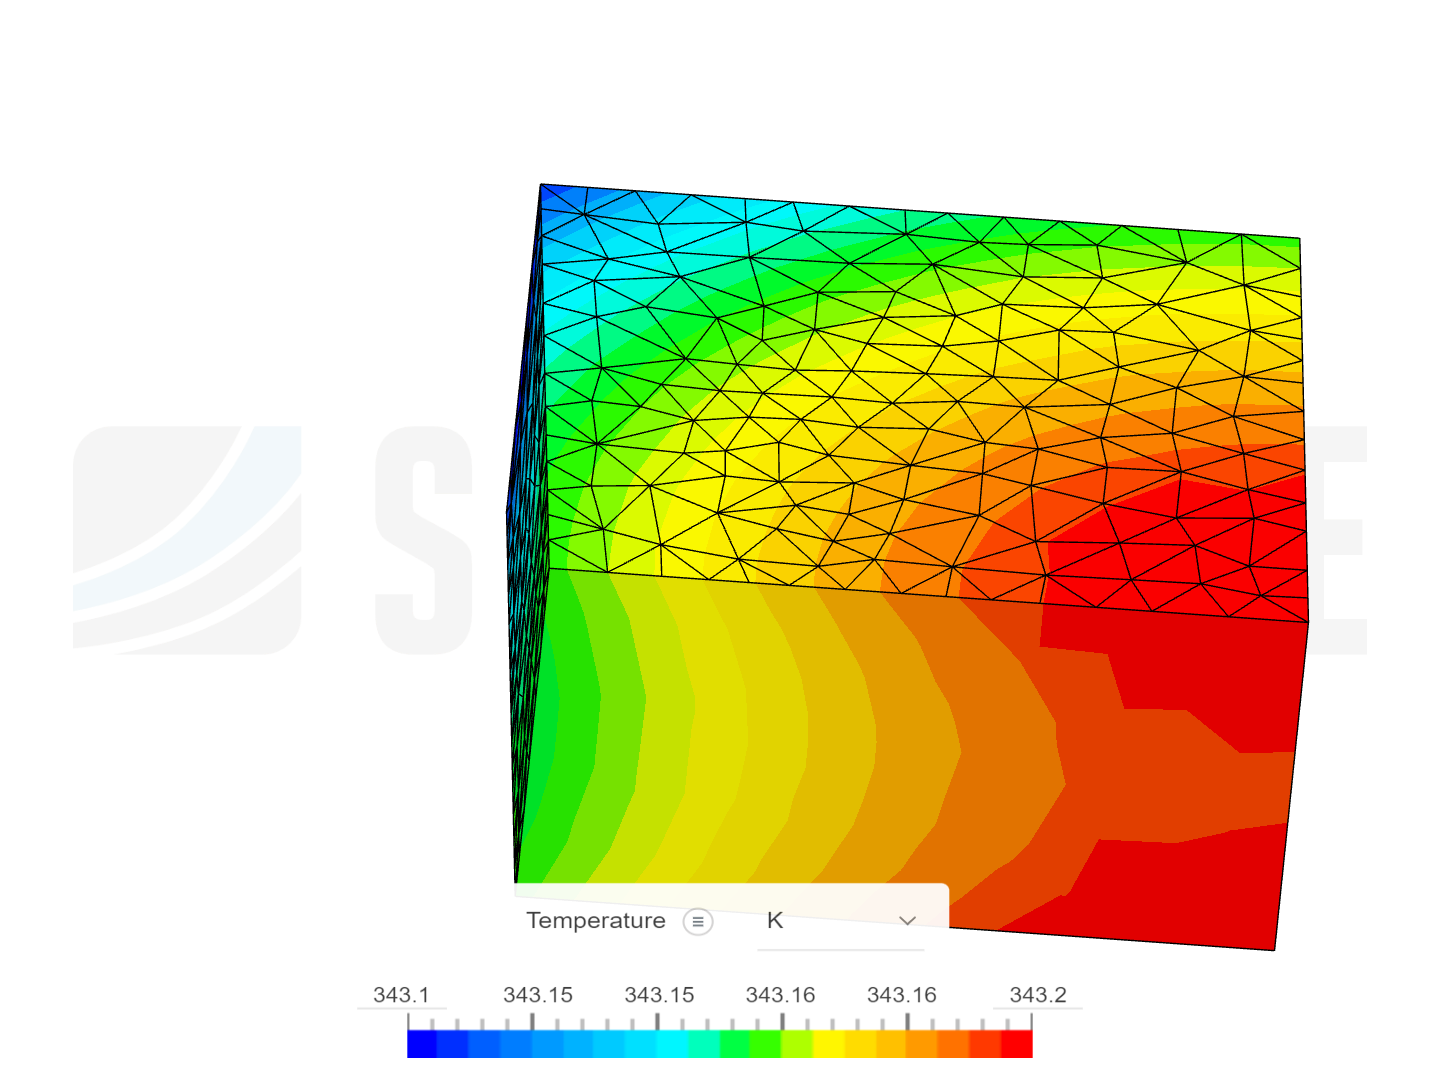 temperatur analysis image